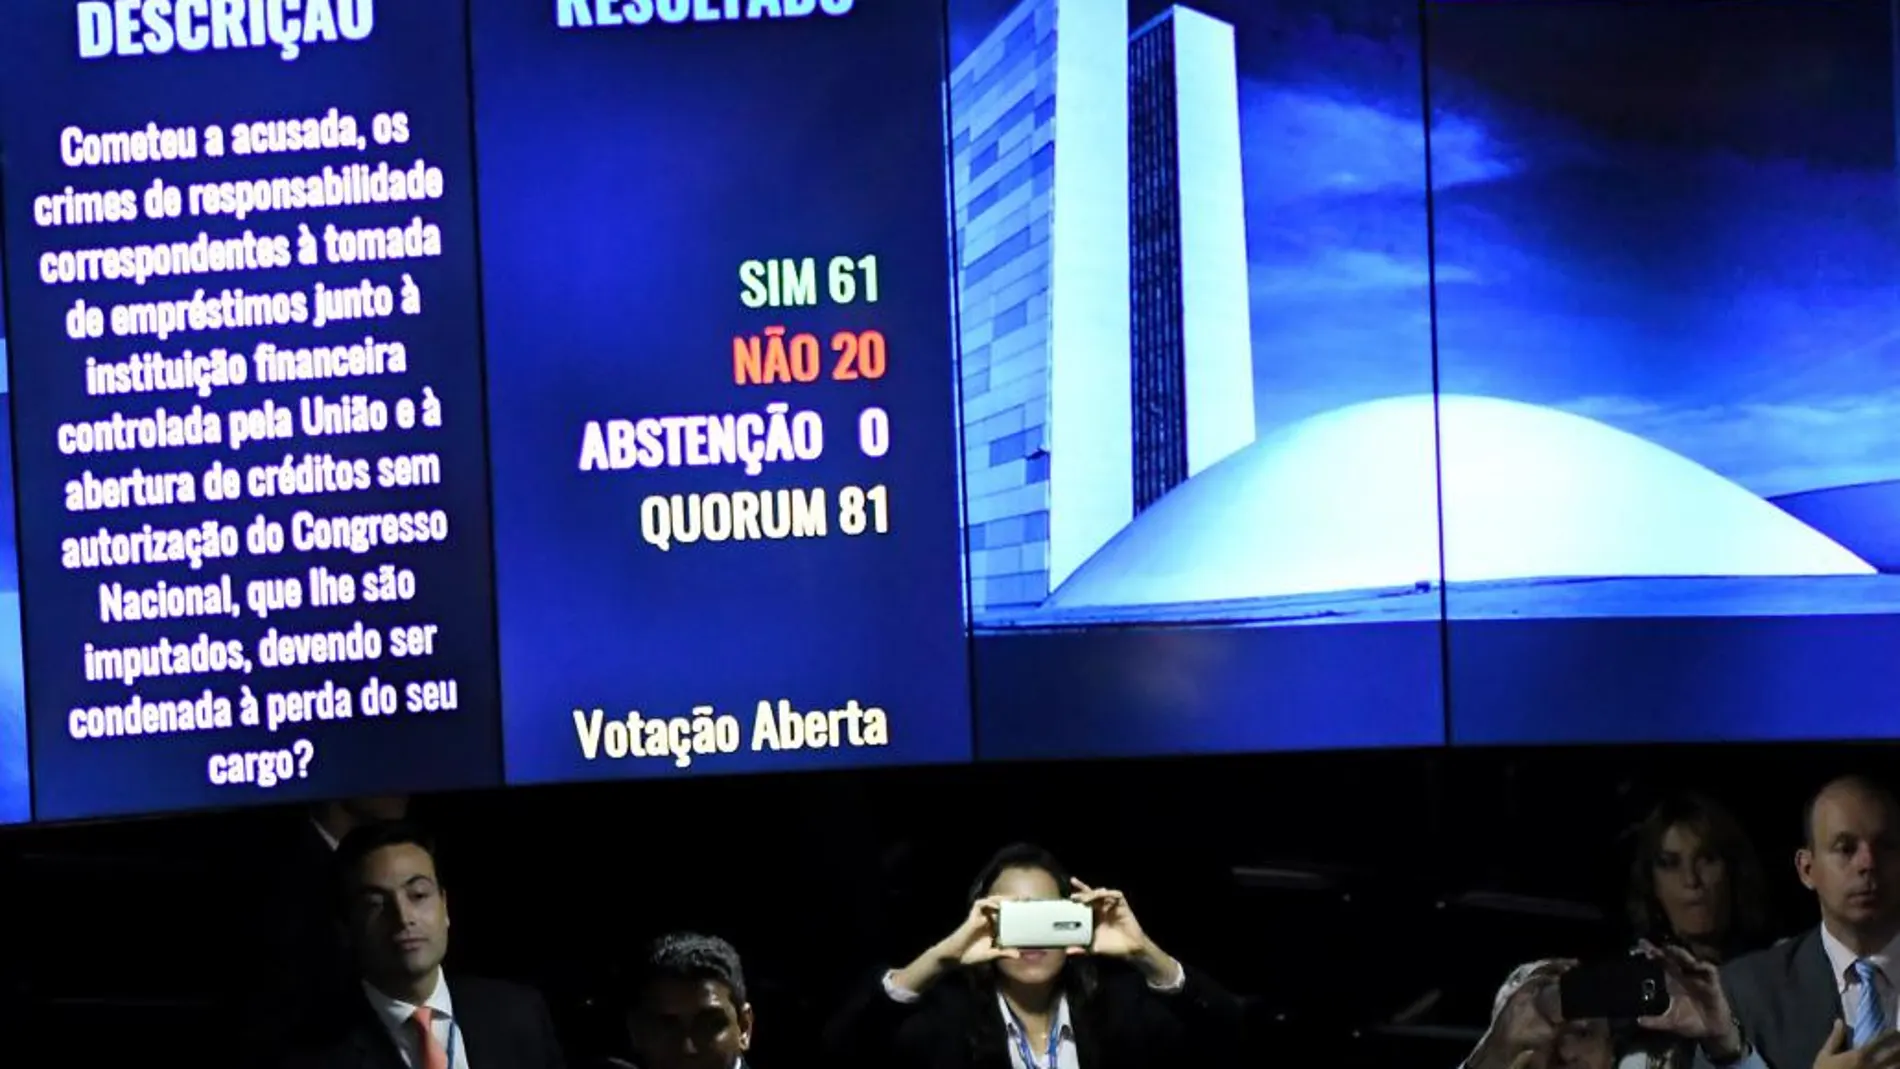 Vista del panel electrónico del Senado que muestra el resultado de la votación hoy miércoles 31 de agosto de 2016, en Brasilia (Brasil).